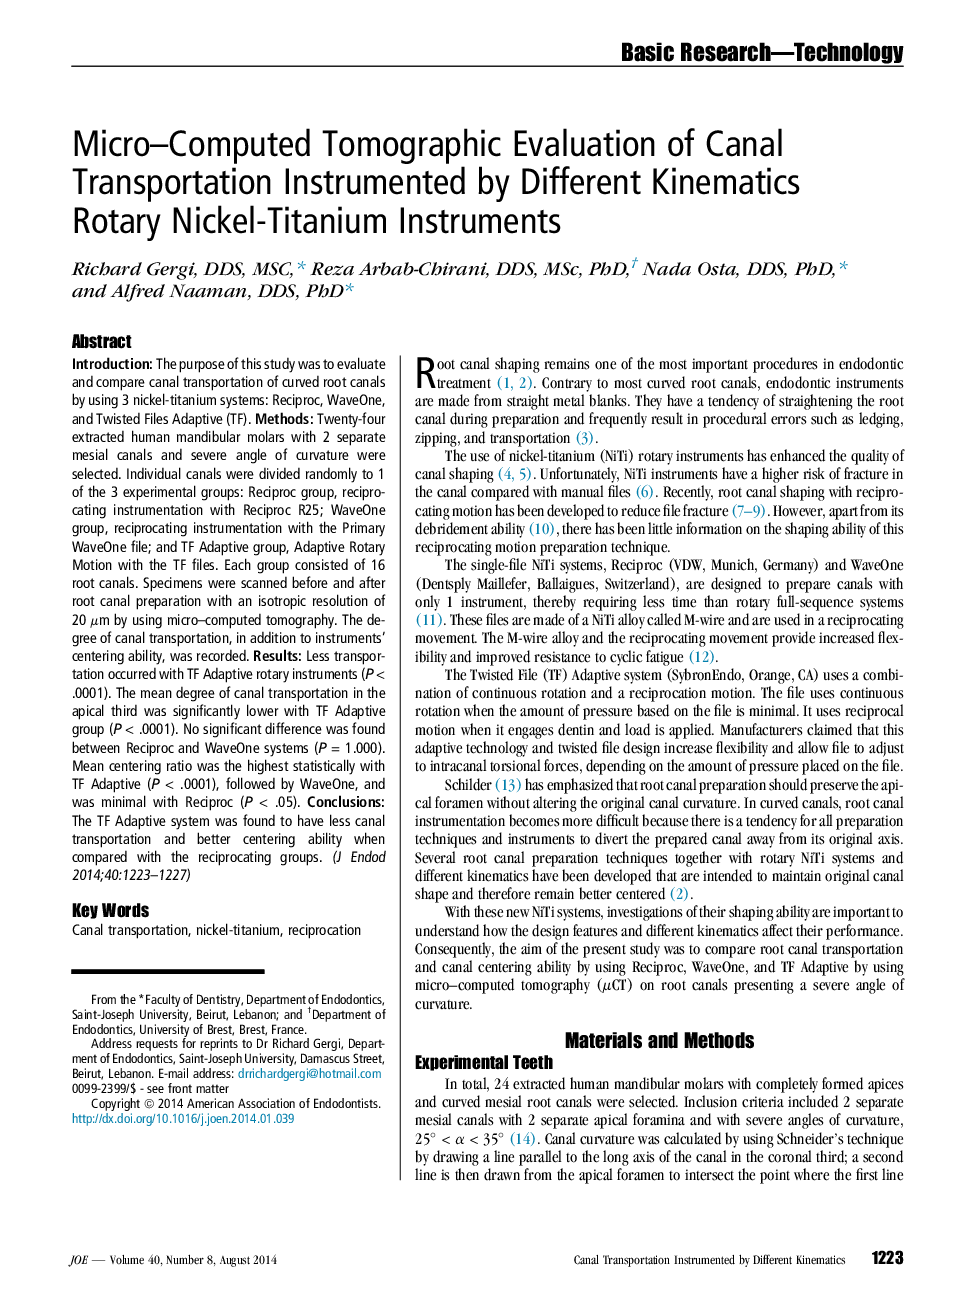 ارزیابی توموگرافی میکرو محاسبات انتقال کانال توسط دستگاه های نیکل تیتانیوم روتاری کینماتیک مختلف 